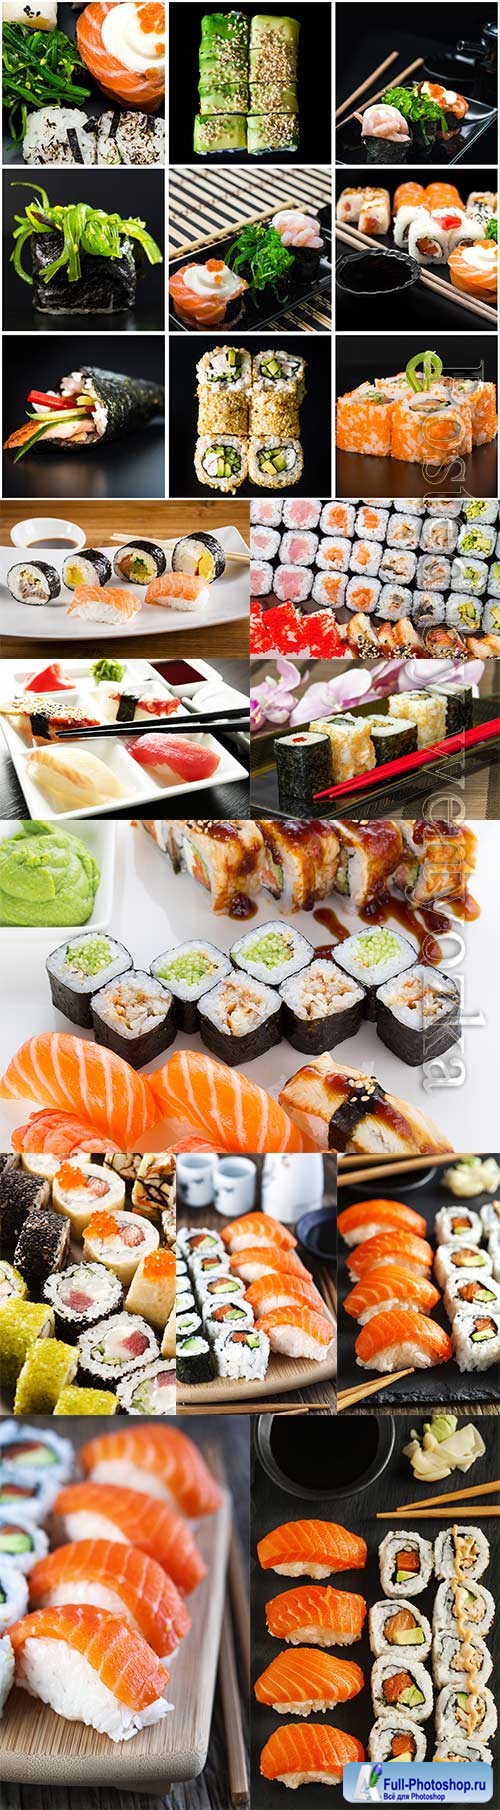 Appetizing sushi sets stock photo